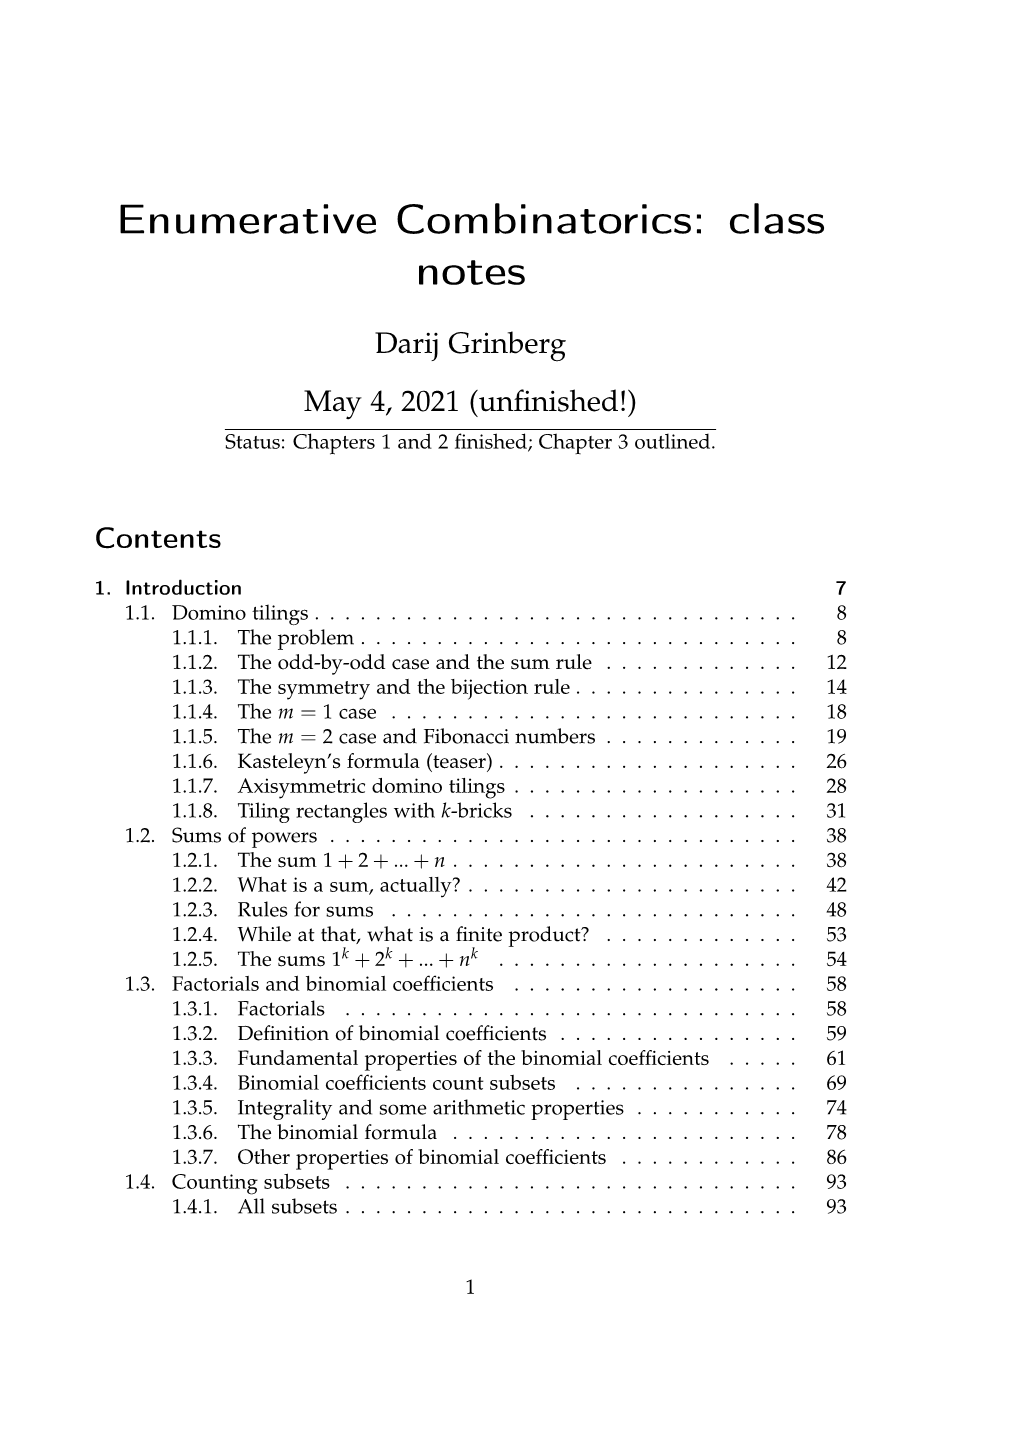 Enumerative Combinatorics: Class Notes